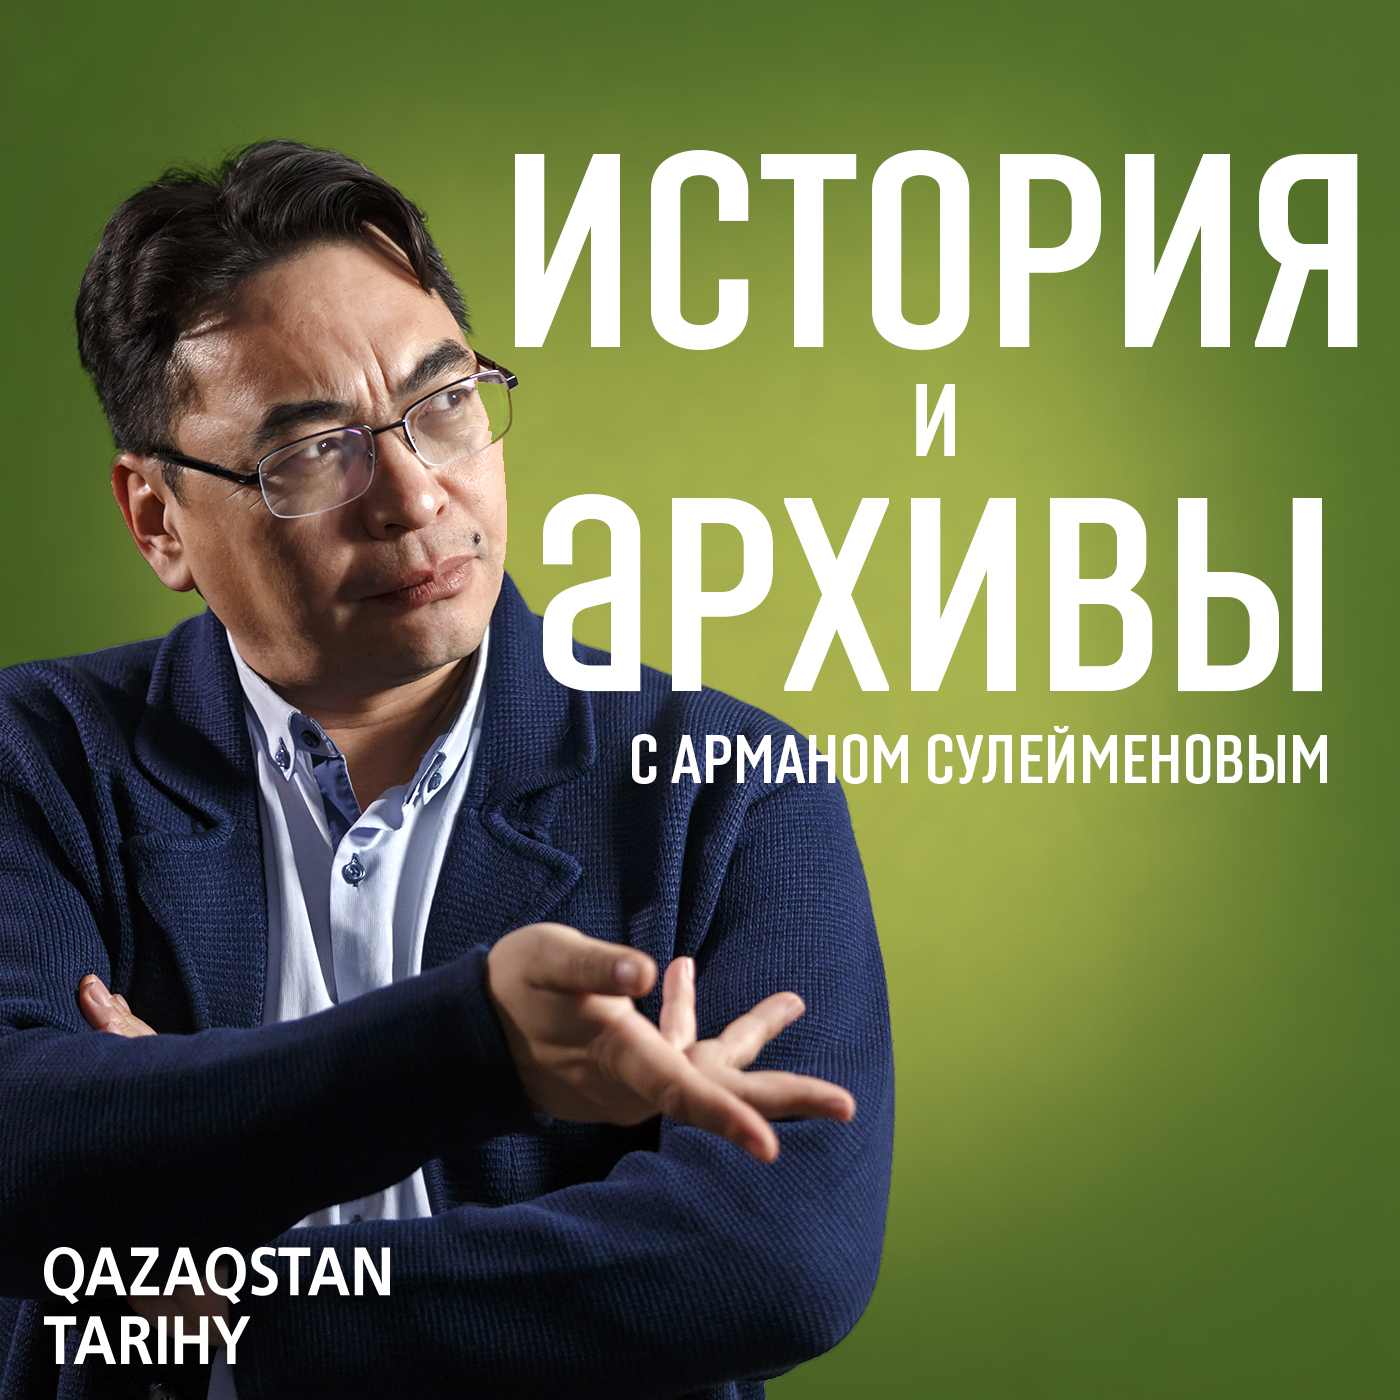 Г. Загряжский о похоронных традициях казахов